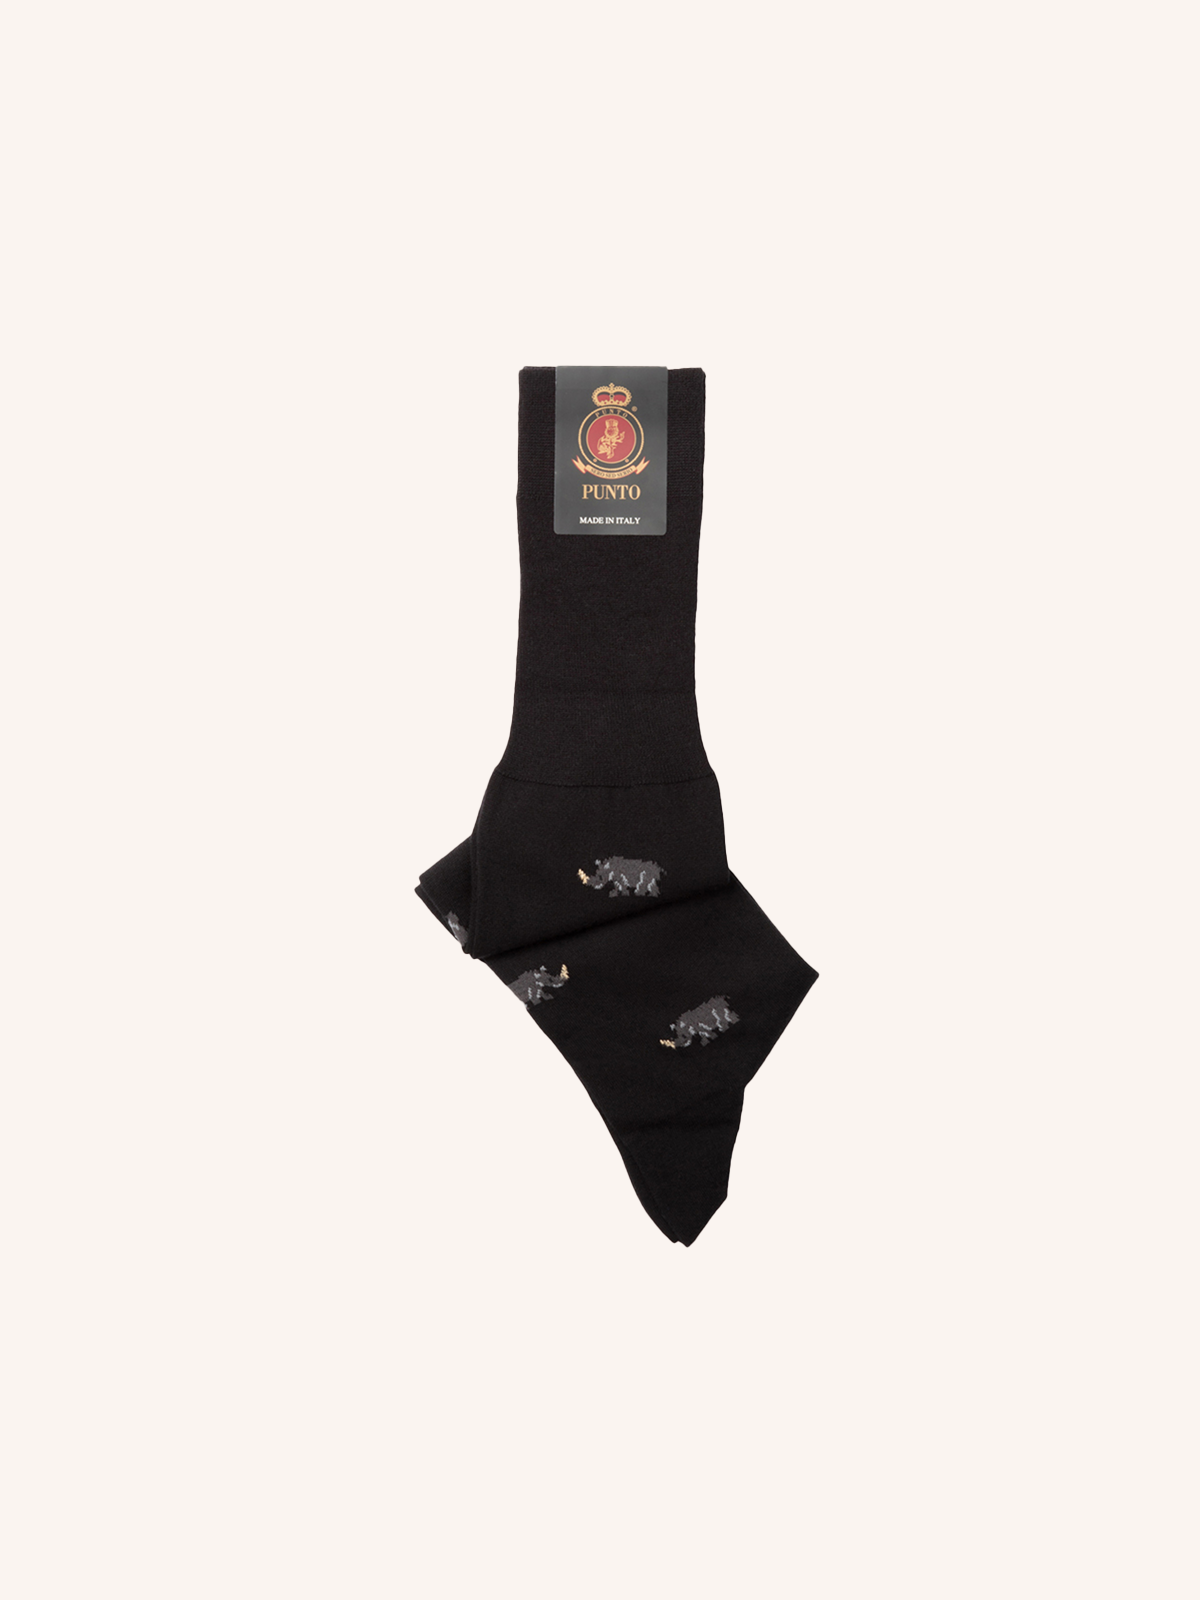 Long Patterned Sock for Men | Fantasy | Single Pack | Kiefer 